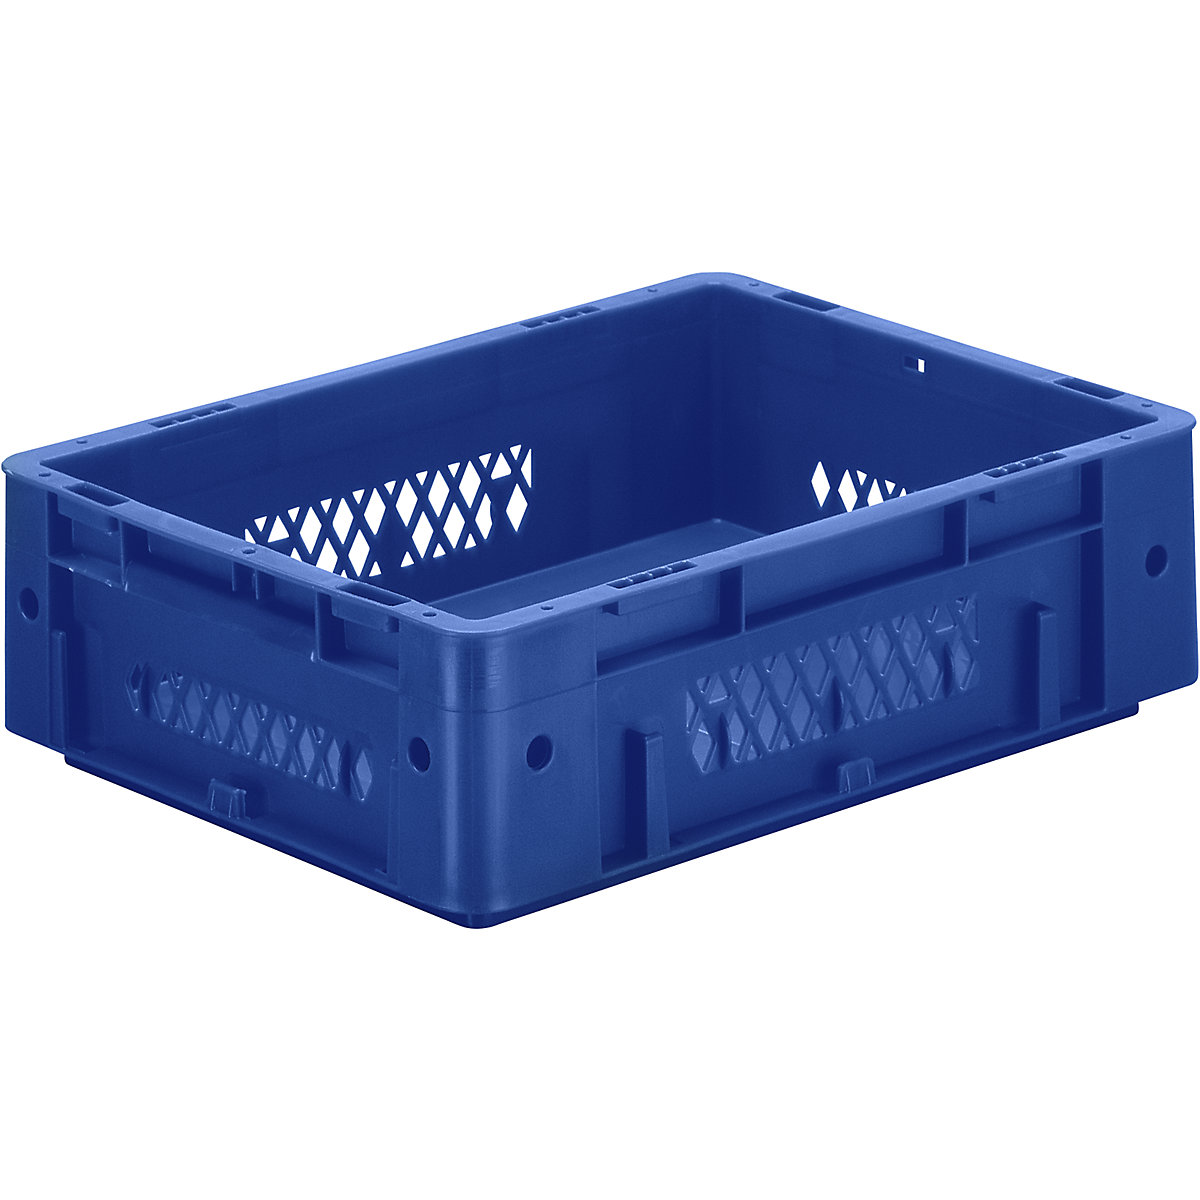 Schwerlast-Euro-Behälter, Polypropylen, Volumen 9,2 l, LxBxH 400 x 300 x 120 mm, Wände durchbrochen, Boden geschlossen, blau, VE 4 Stk